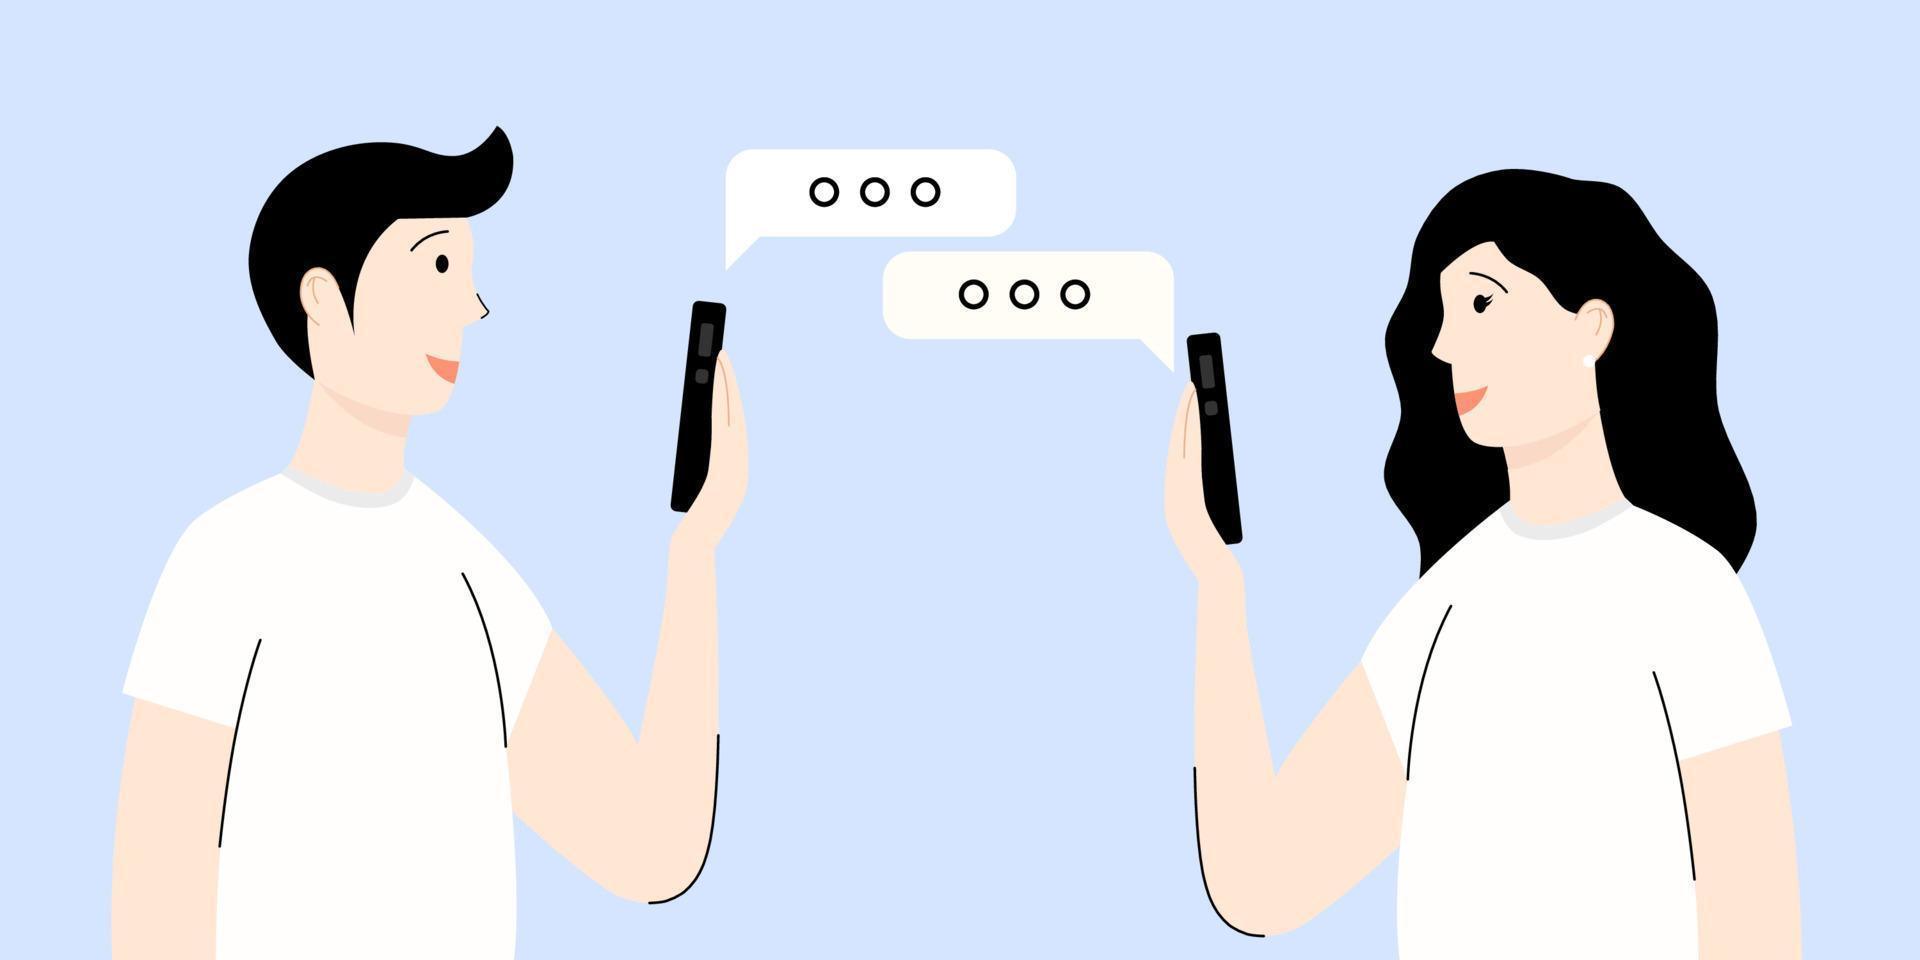 comunicación entre personas. una mujer y un hombre charlando sobre un fondo azul. chat y gadgets. ilustración vectorial en estilo de dibujos animados plana vector